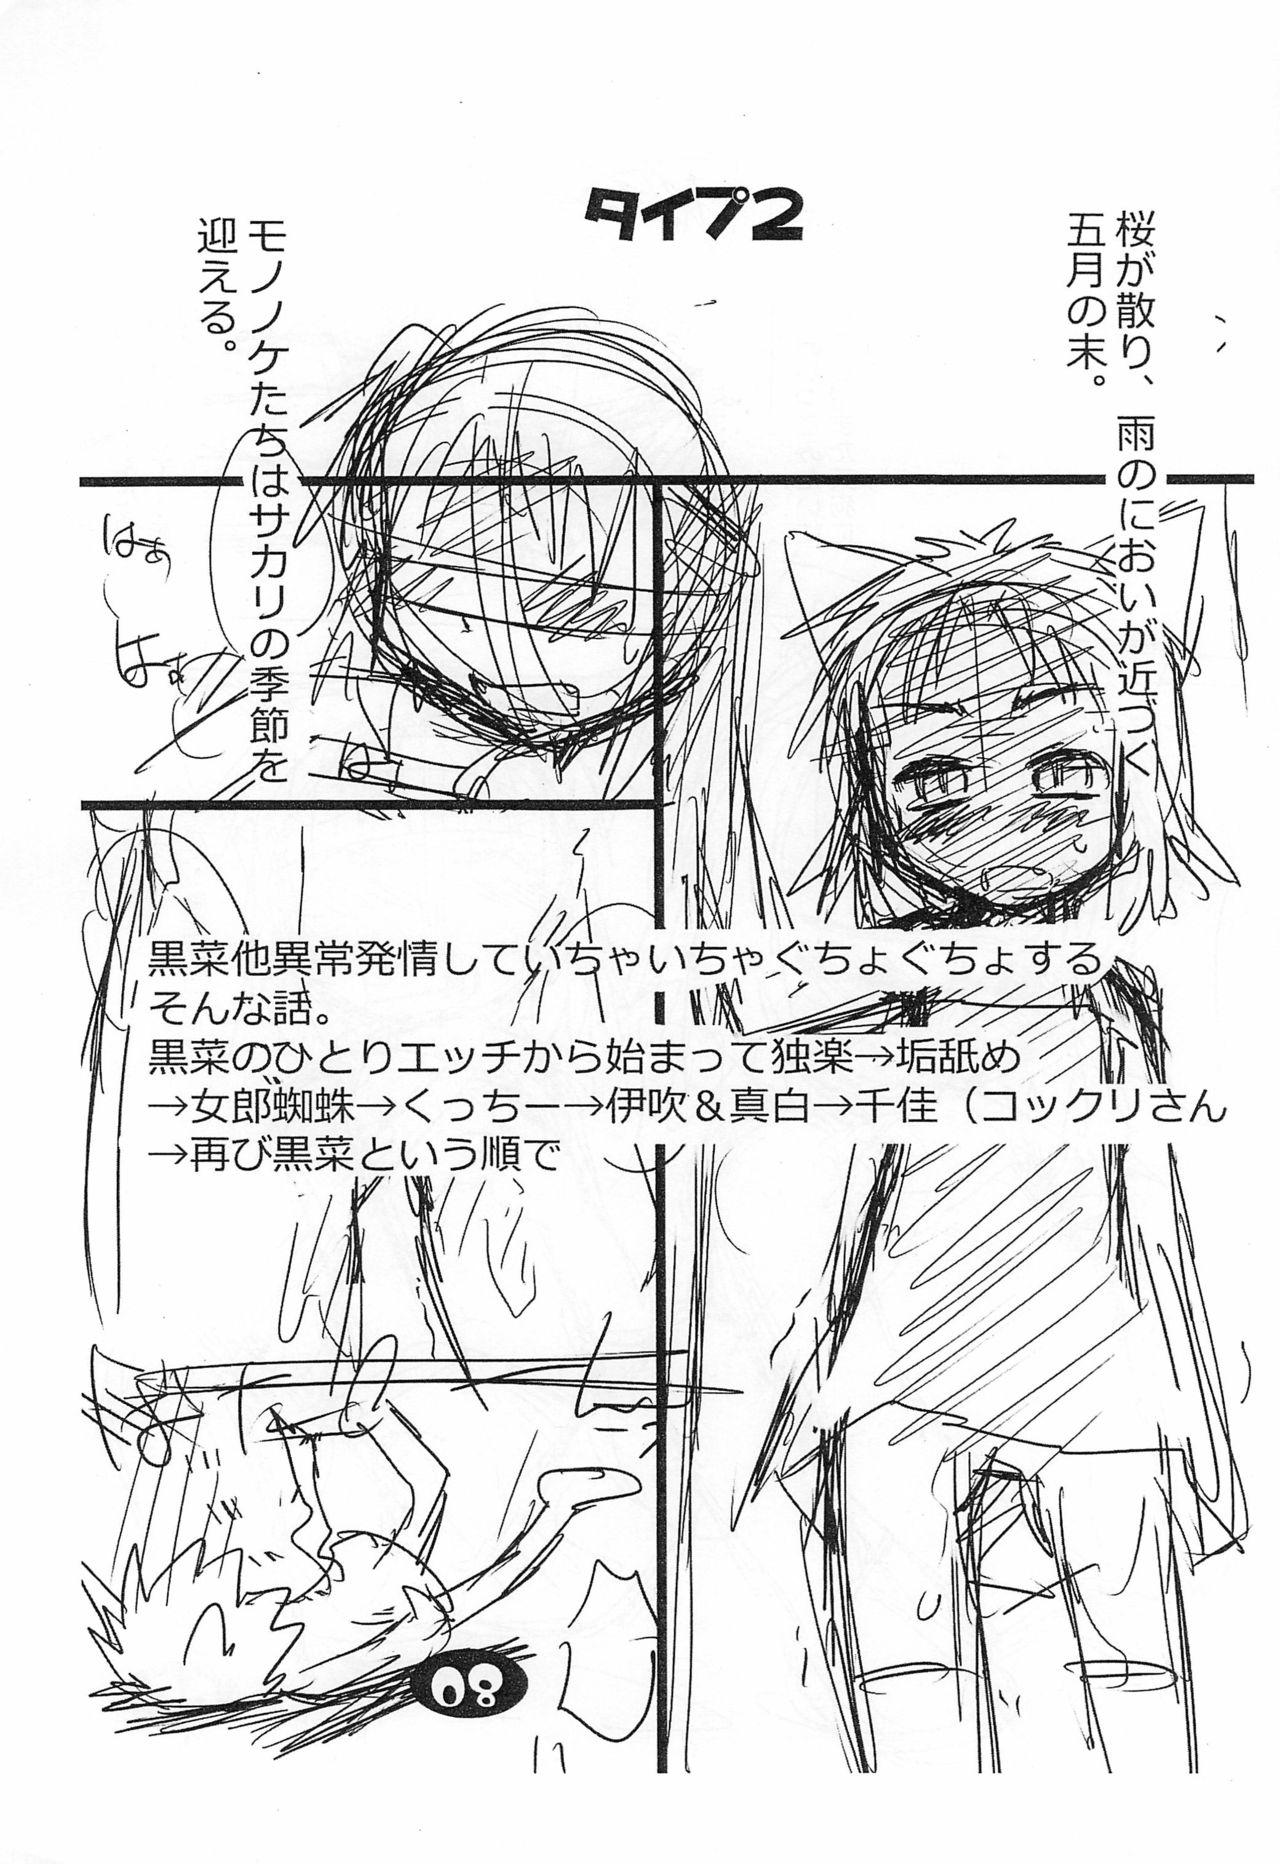 Moaning (Puniket 30) [Ware PON! (KONKON)] Nuko Musume-ppoi Offset Junbi-gou (Neko Musume Michikusa Nikki) - Neko musume michikusa nikki Tesao - Page 9